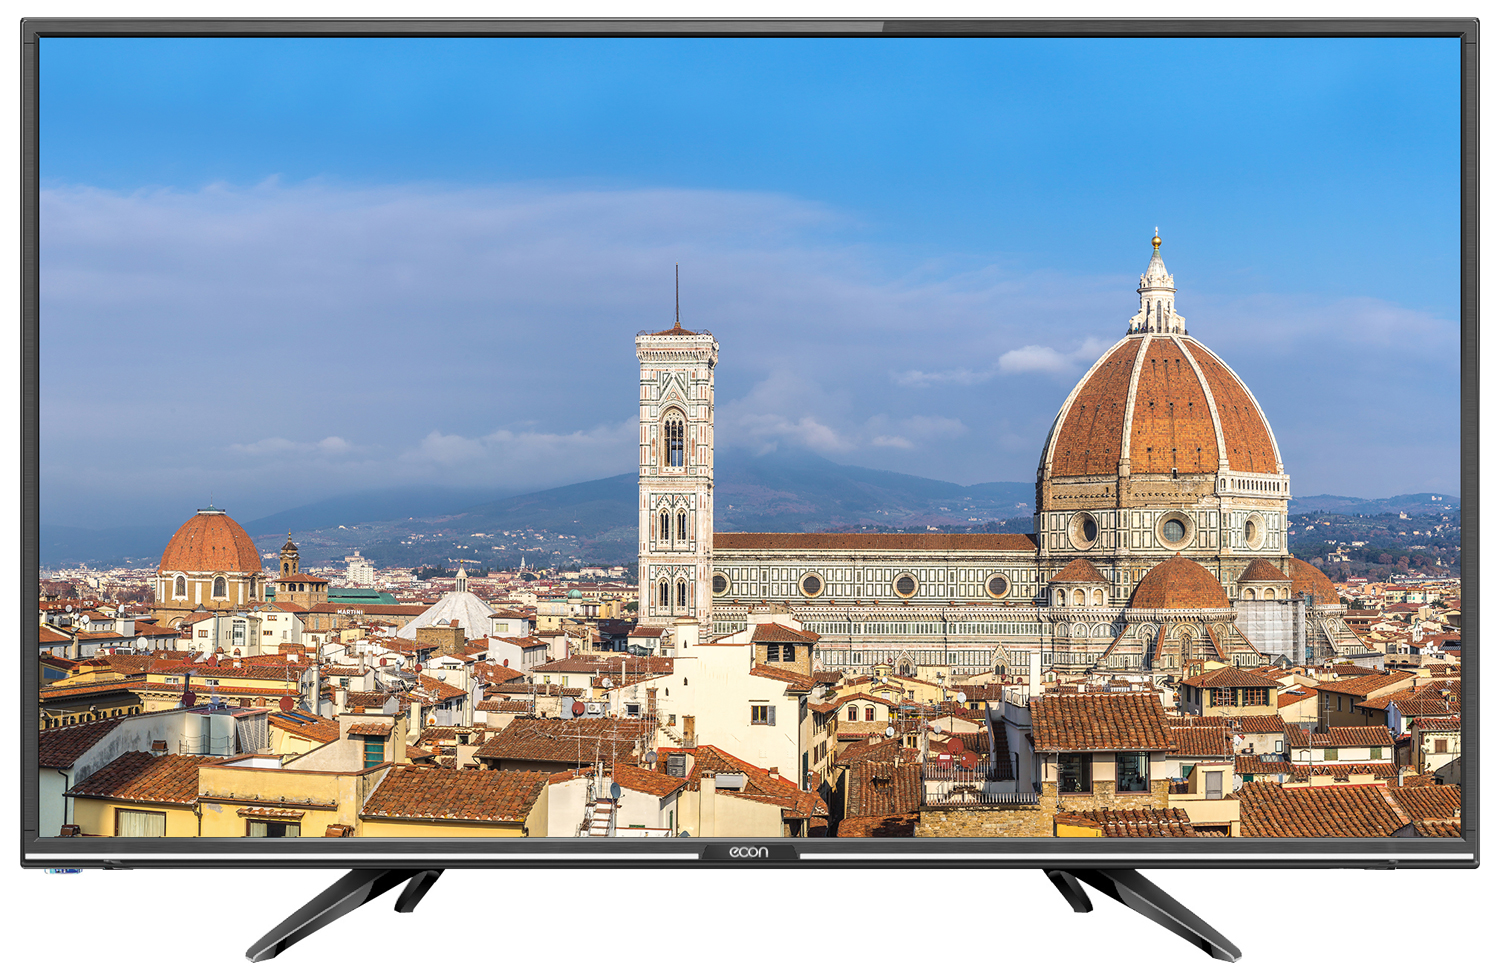 Картинка Телевизор ECON EX-22FT004B по разумной цене купить в интернет магазине mall.su